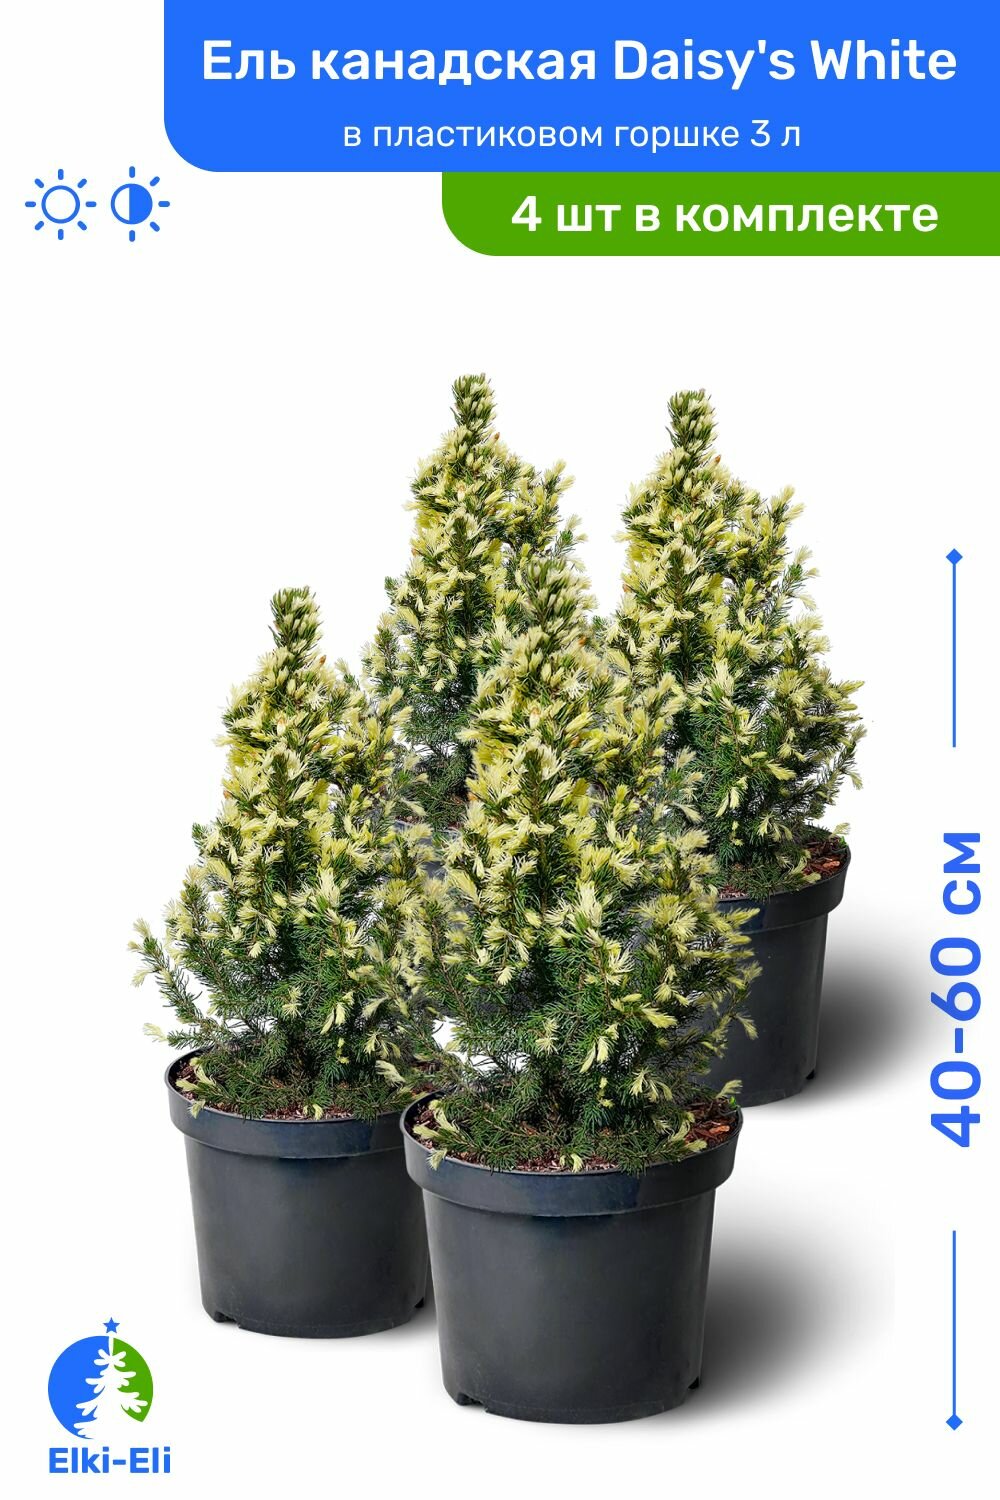 Ель канадская Daisys White (Дейзи Вайт) 40-60 см в пластиковом горшке 3 л, саженец, хвойное живое растение, комплект из 4 шт